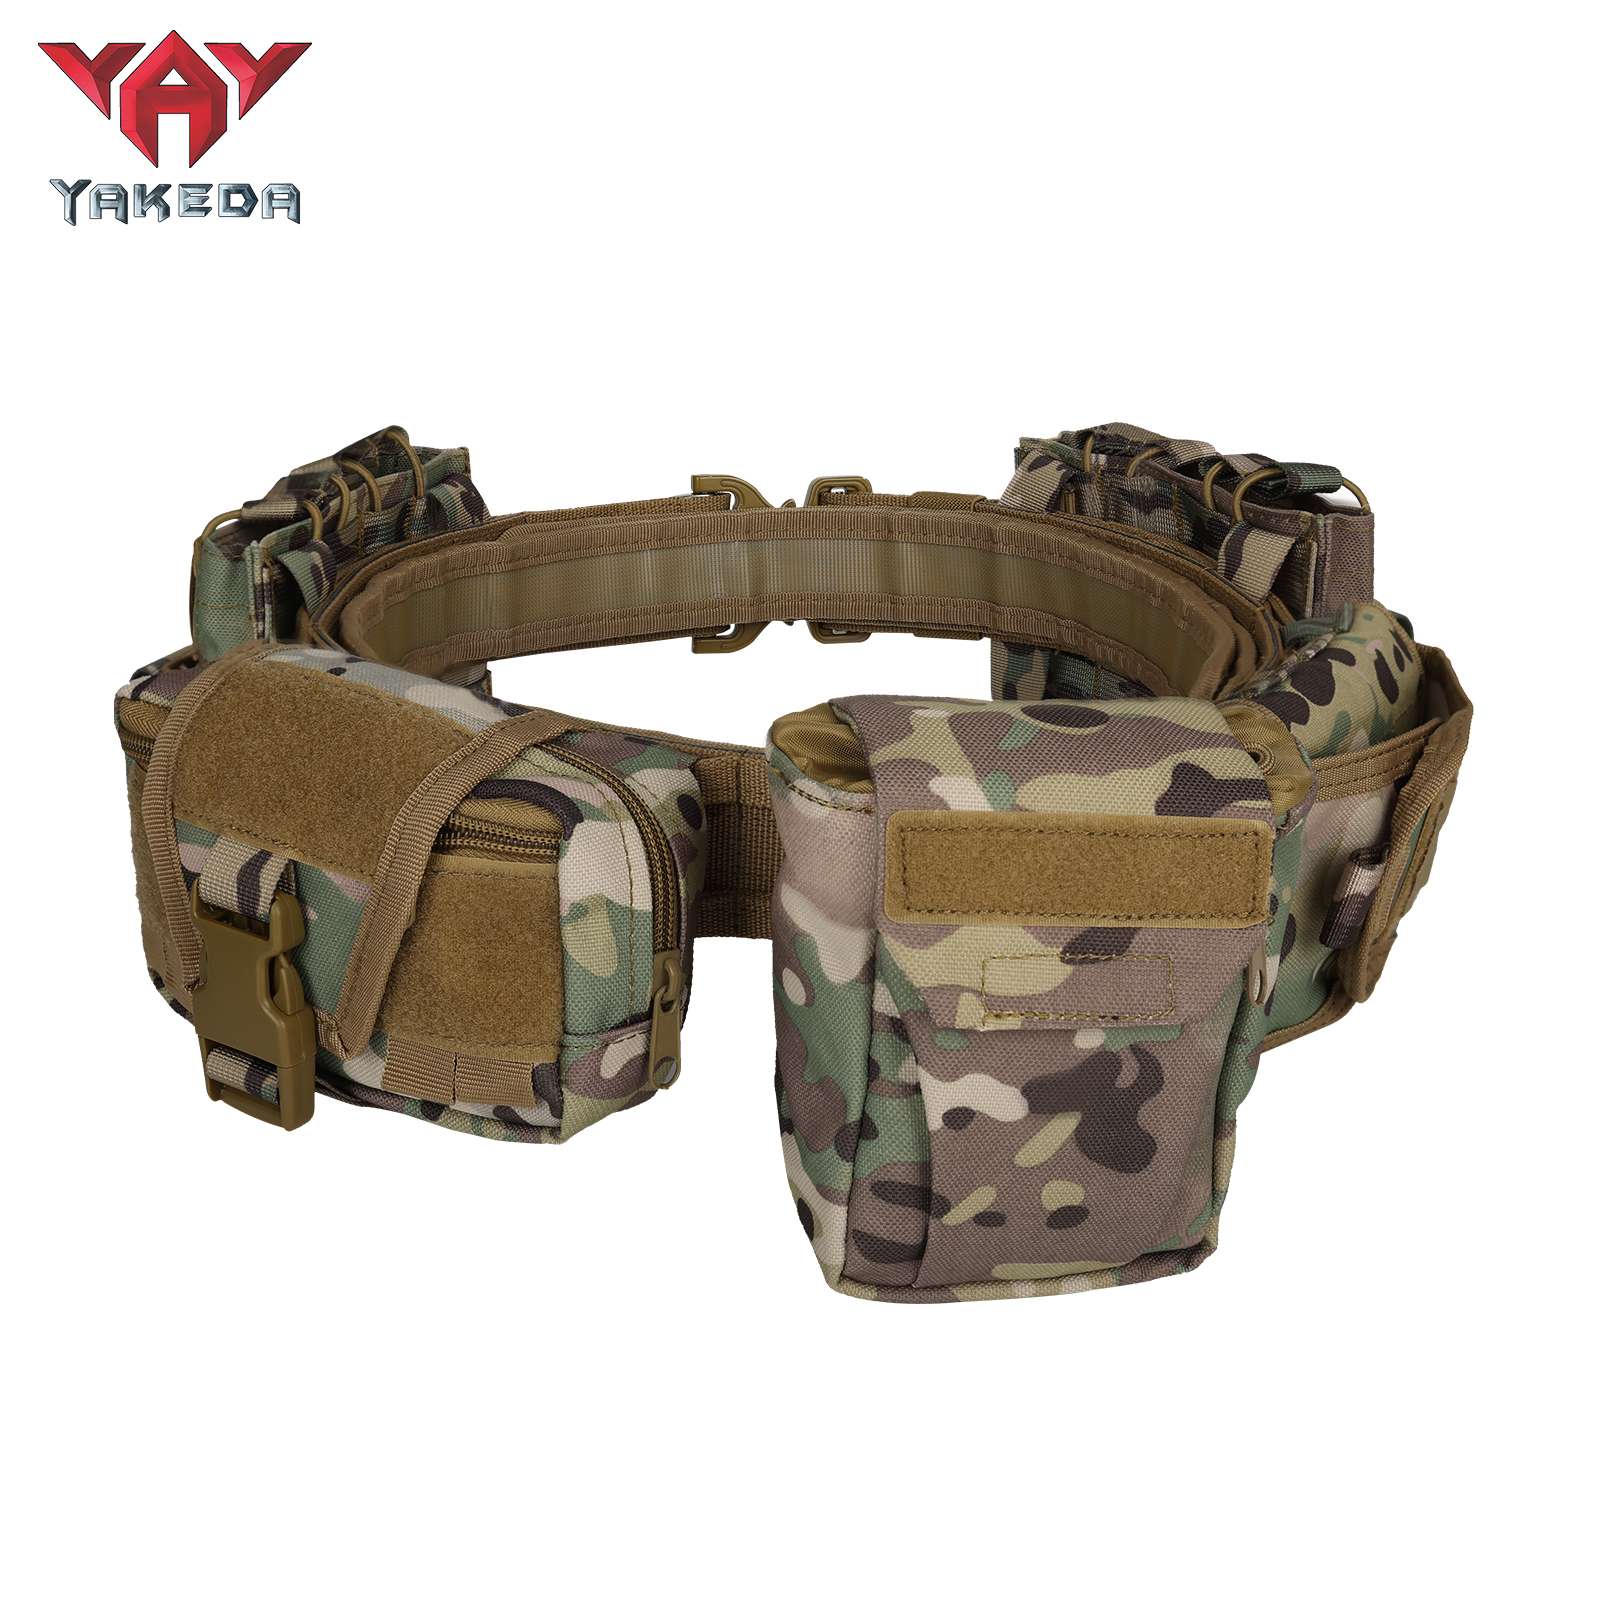 Yakeda MOLLE Cinturón de combate de liberación rápida con bolsas Juego de cinturón táctico interior y exterior de alta resistencia